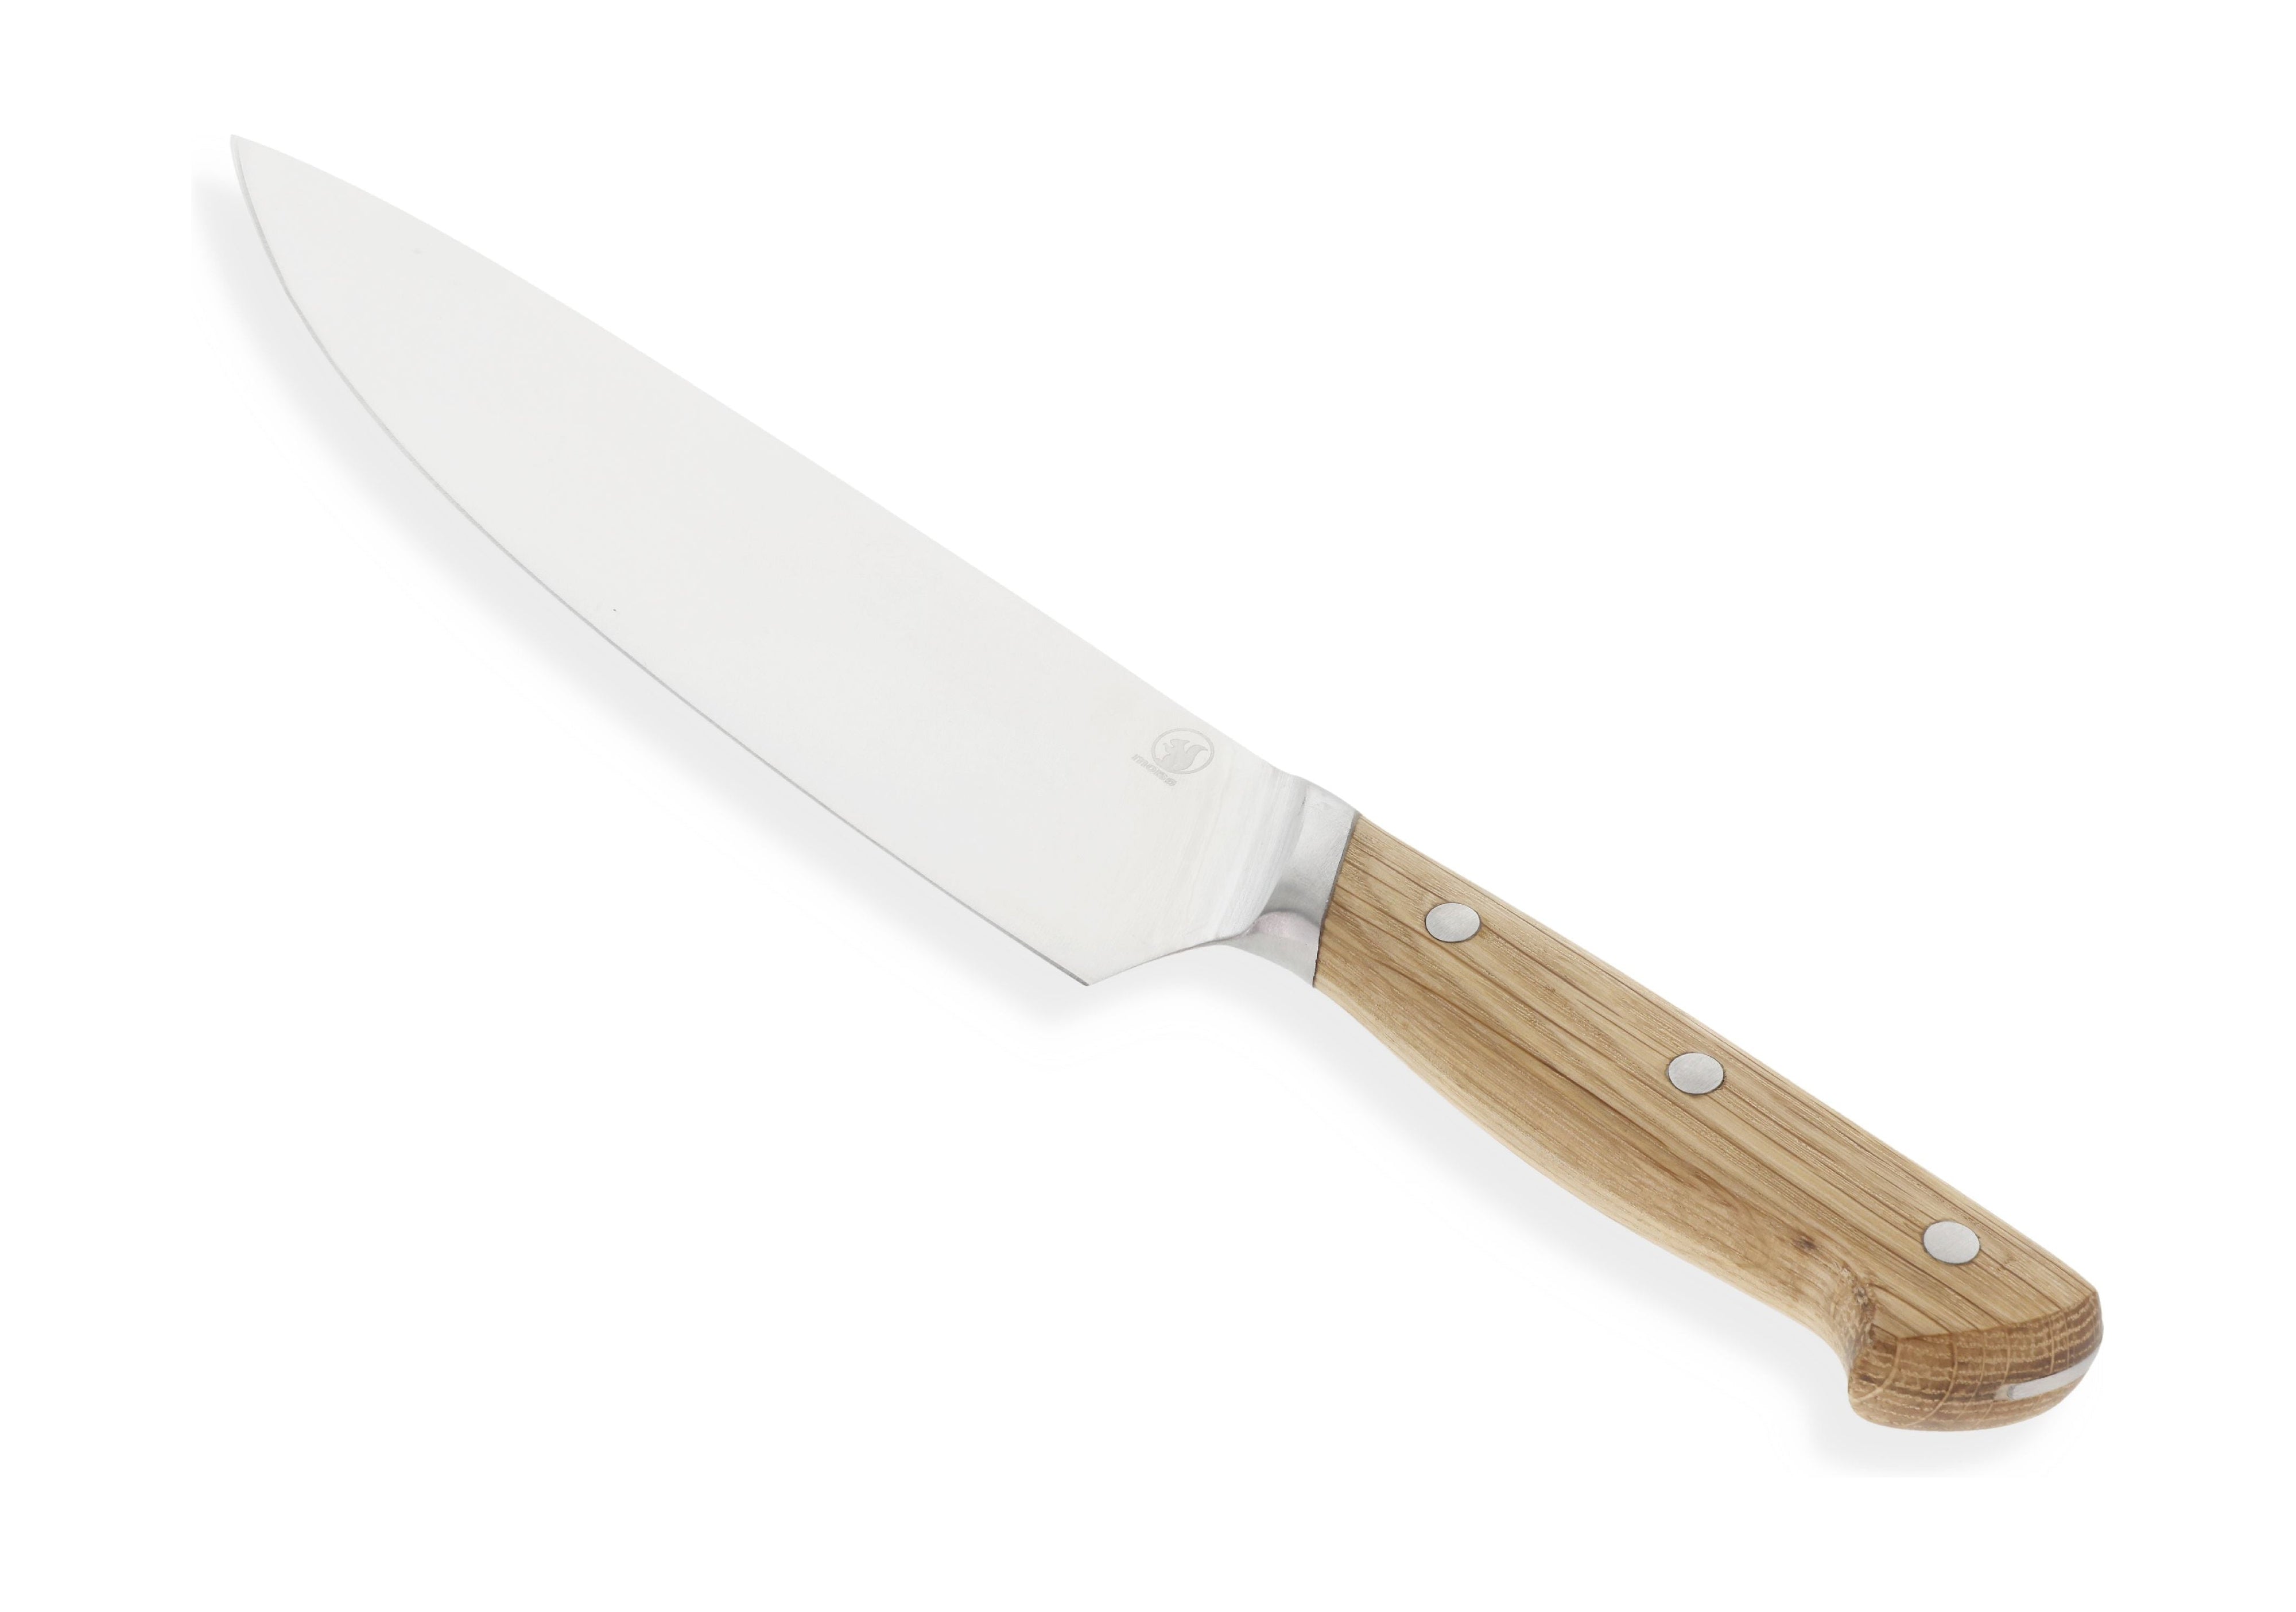 Morsø ForestA Chefův nůž